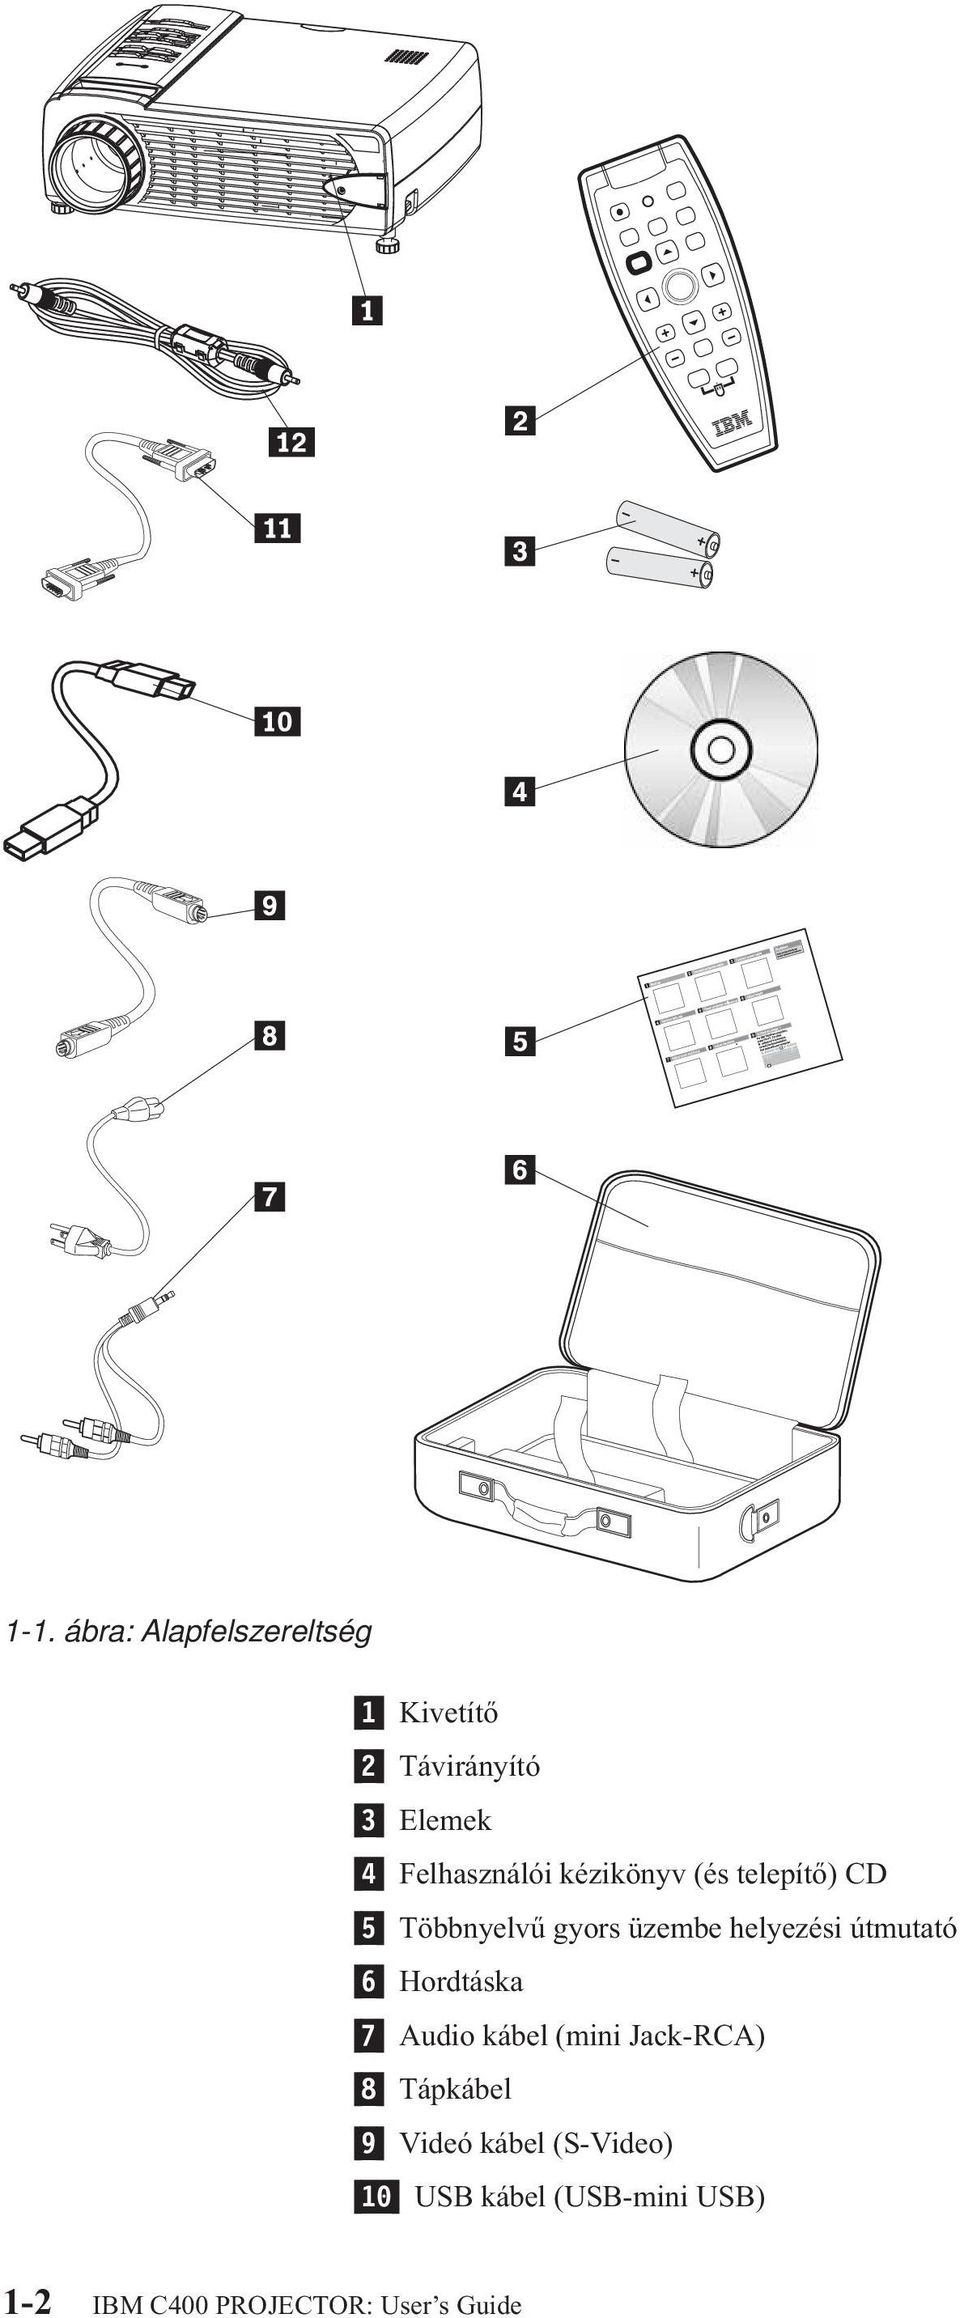 helyezési útmutató 6 Hordtáska 7 Audio kábel (mini Jack-RCA) 8 Tápkábel